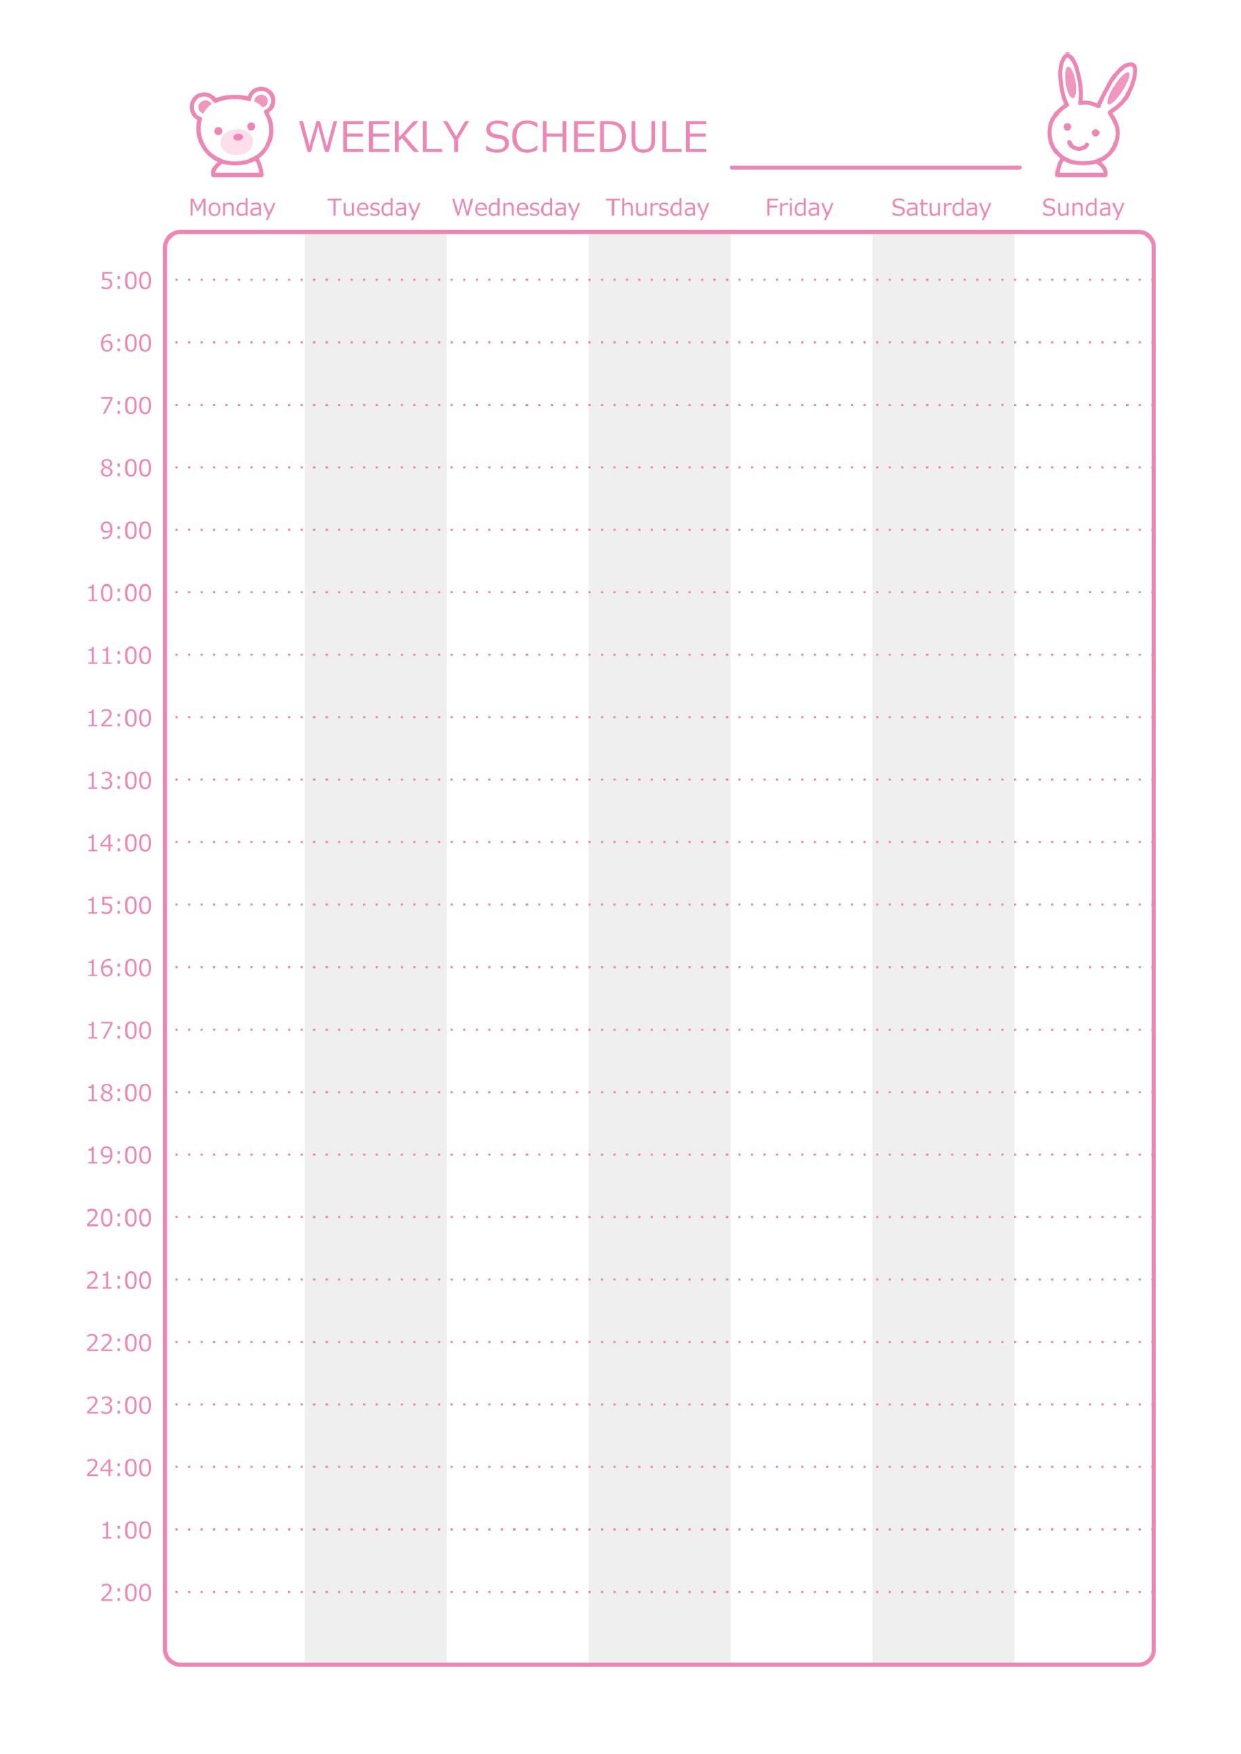 一週間分のタイムスケジュール表「Excel・Word・PDF」としてお使いいただけるテンプレートです。縦軸に時間、横軸に月曜始まりの曜日となっており、細かく時間管理がしやすいケジュール表のテンプレート！時間と曜日は固定のデザインとな